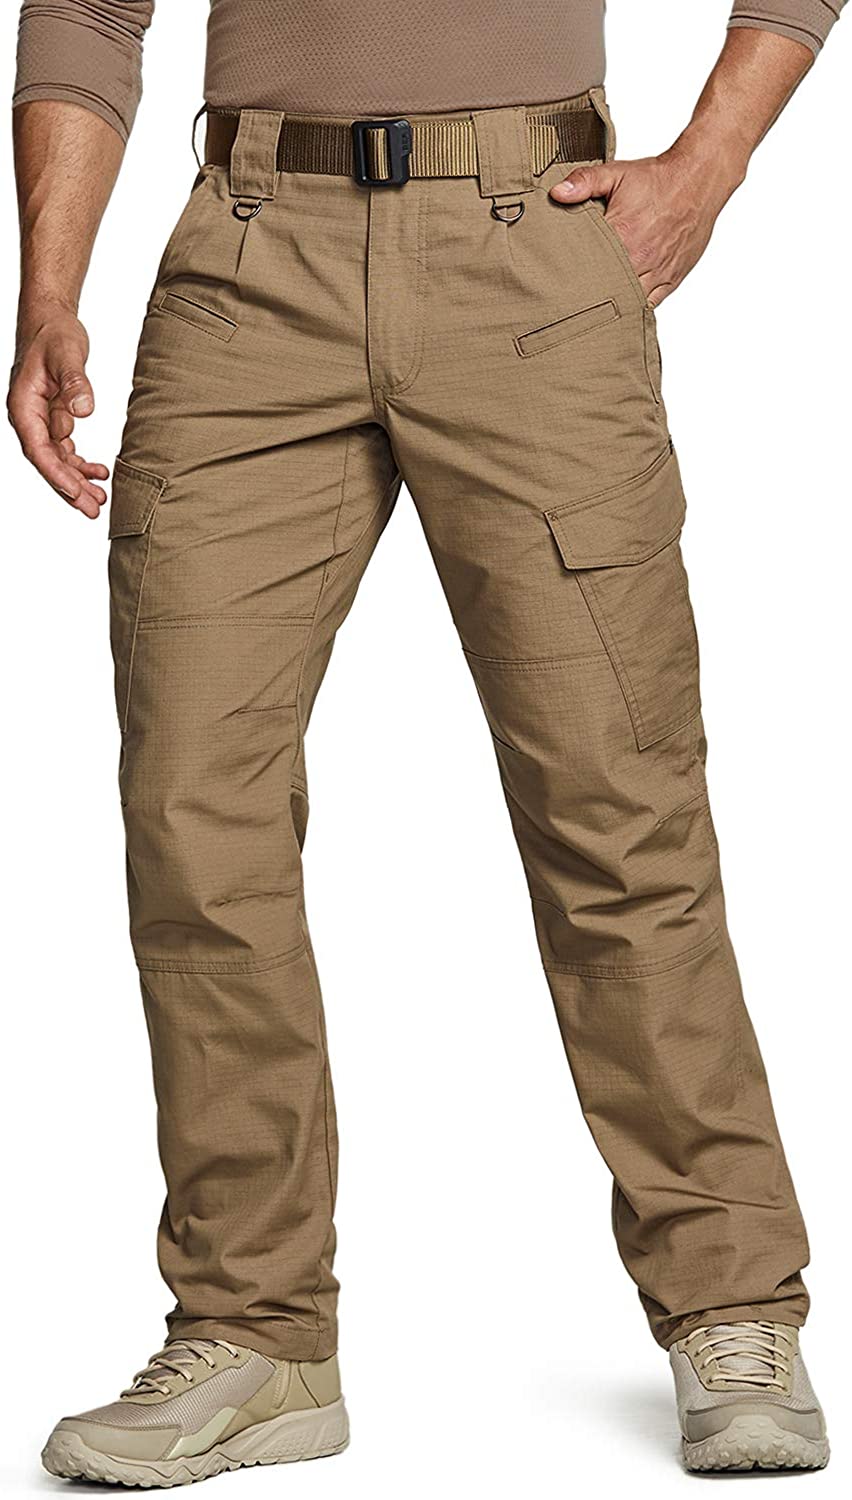 Work Cargo Hiking Pants CQR Men's Tactical Pants 